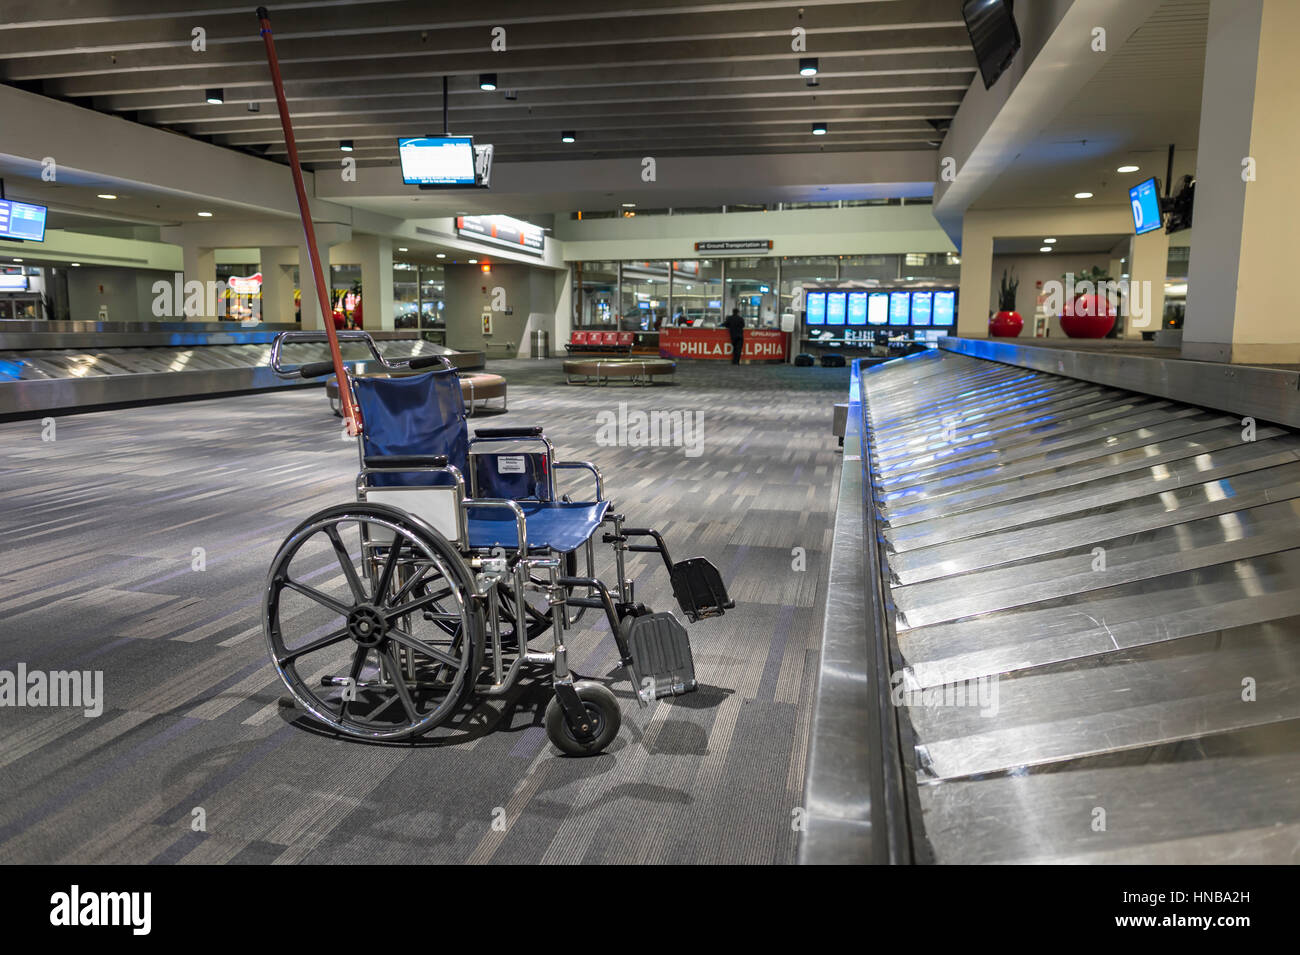 Fauteuil roulant vide dans la zone des bagages de l'aéroport Banque D'Images